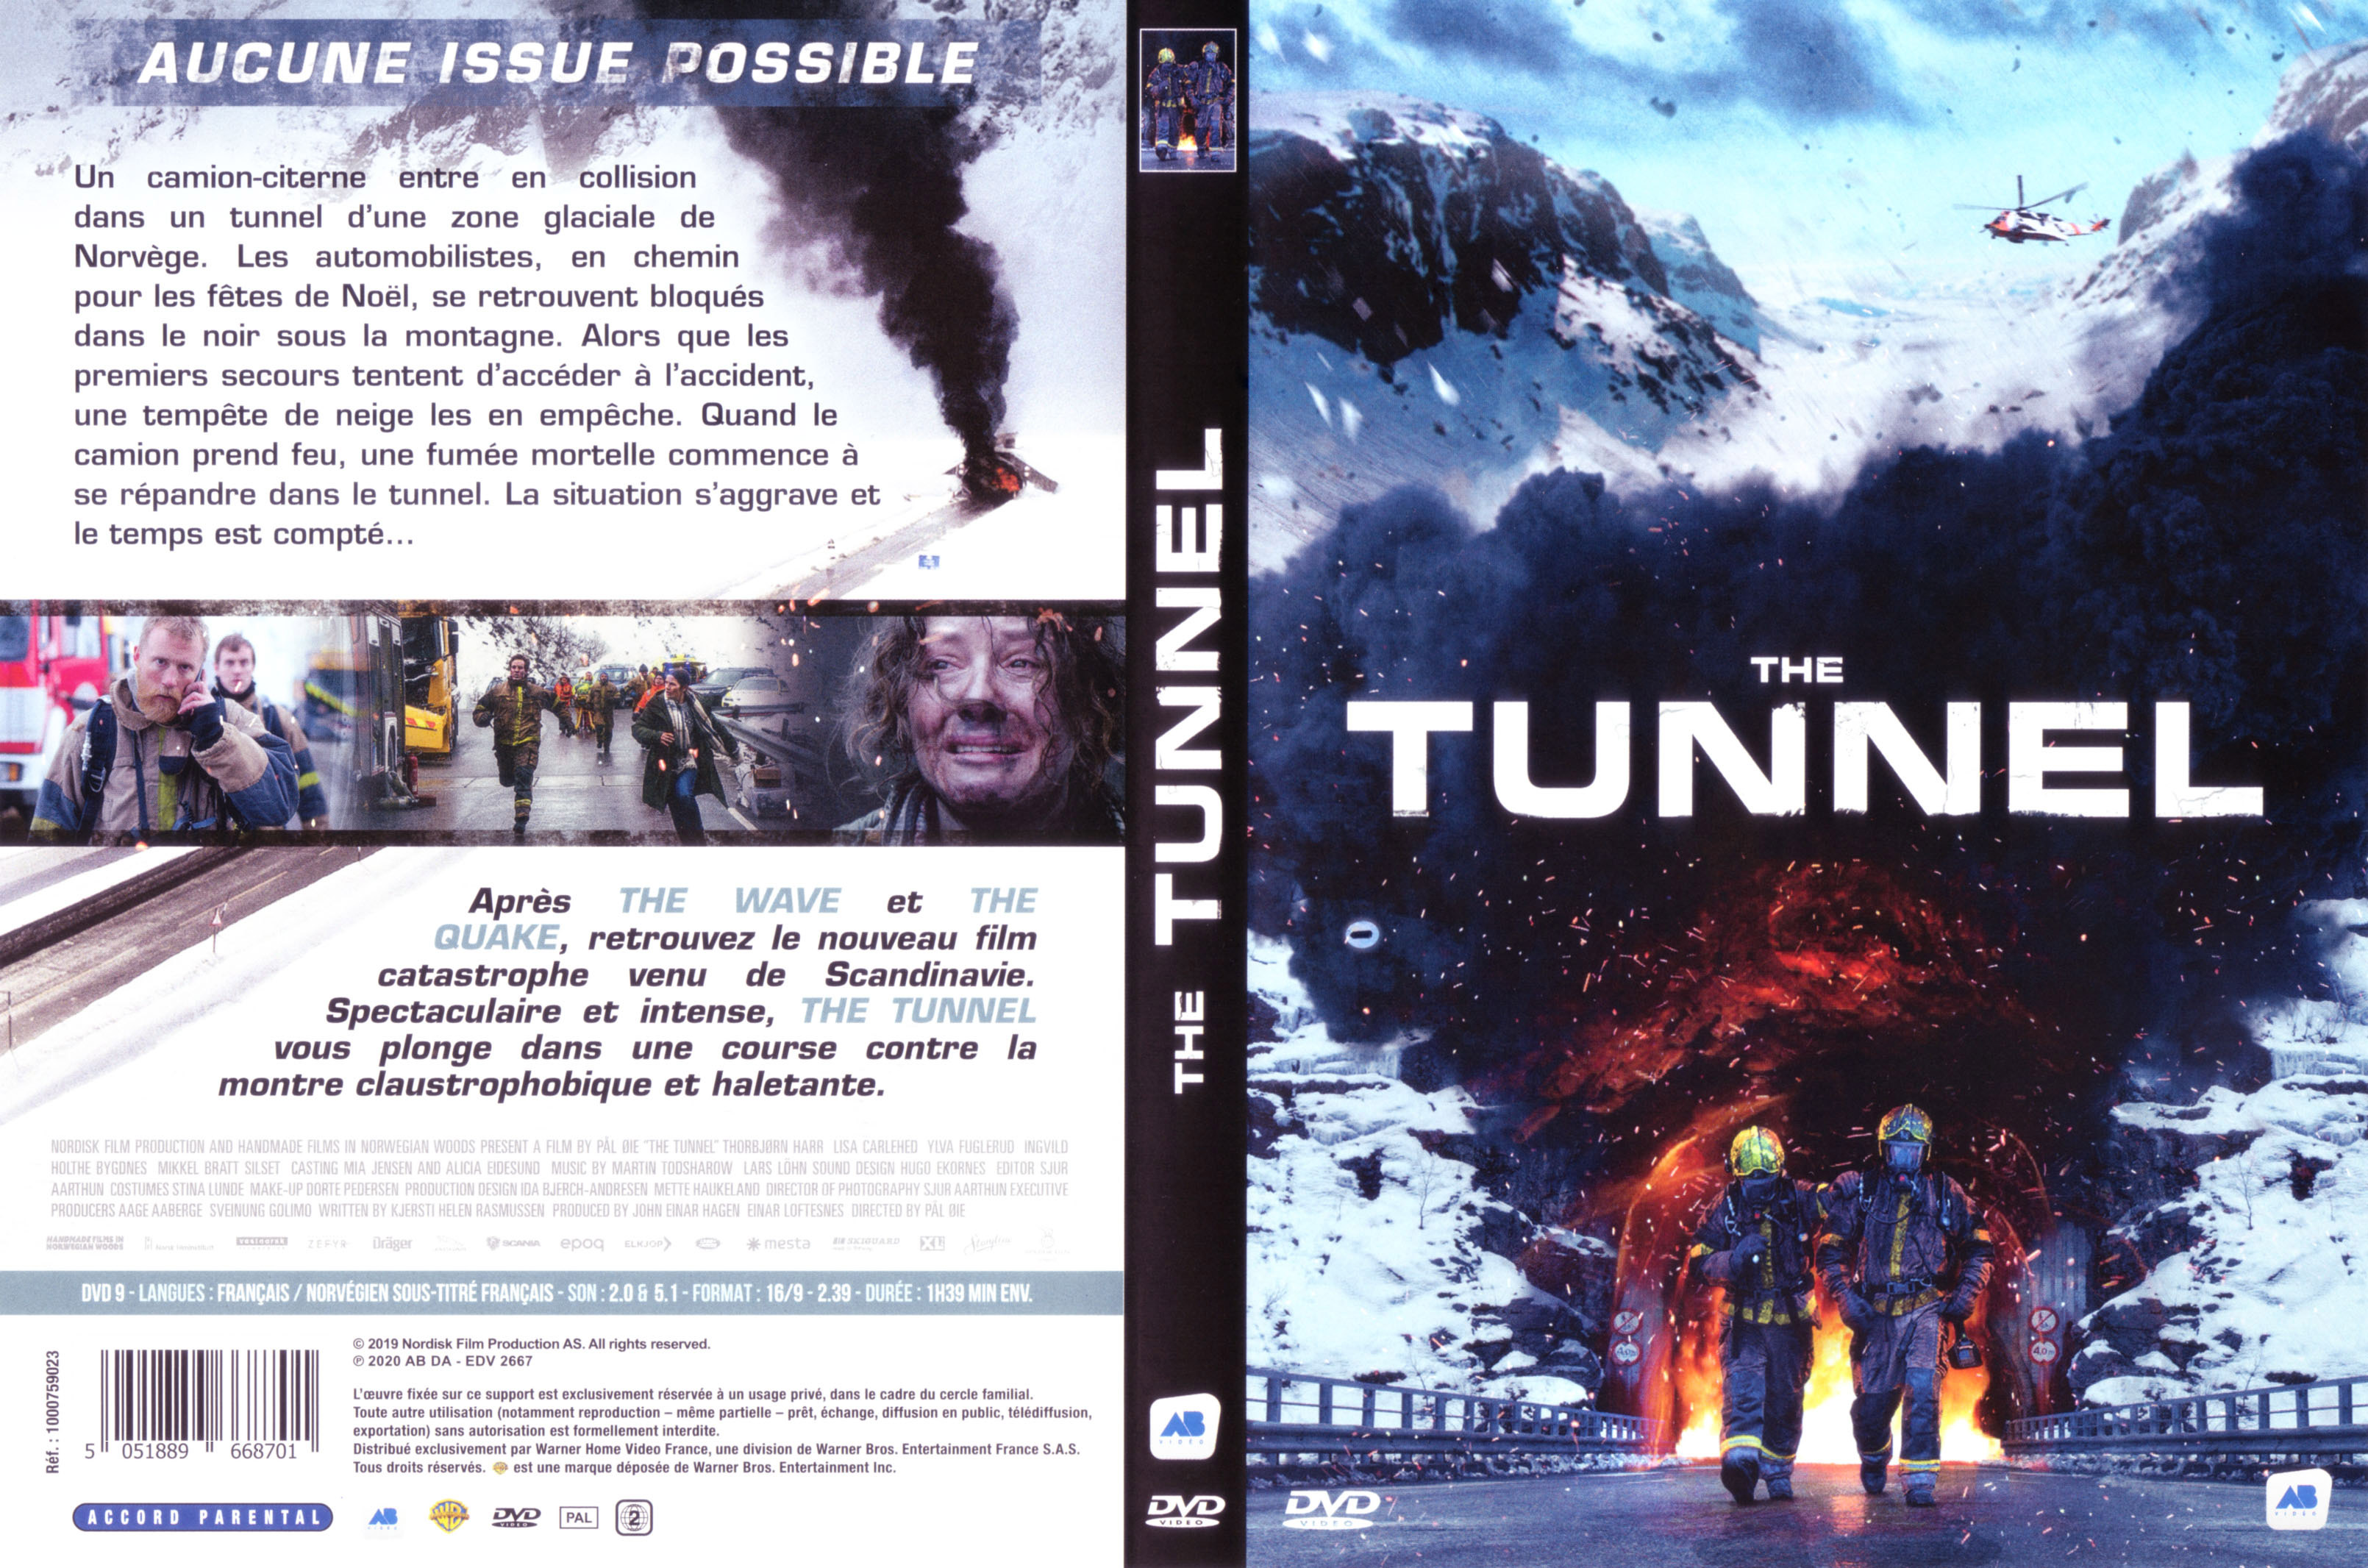 Jaquette DVD de The tunnel (2019) - Cinéma Passion